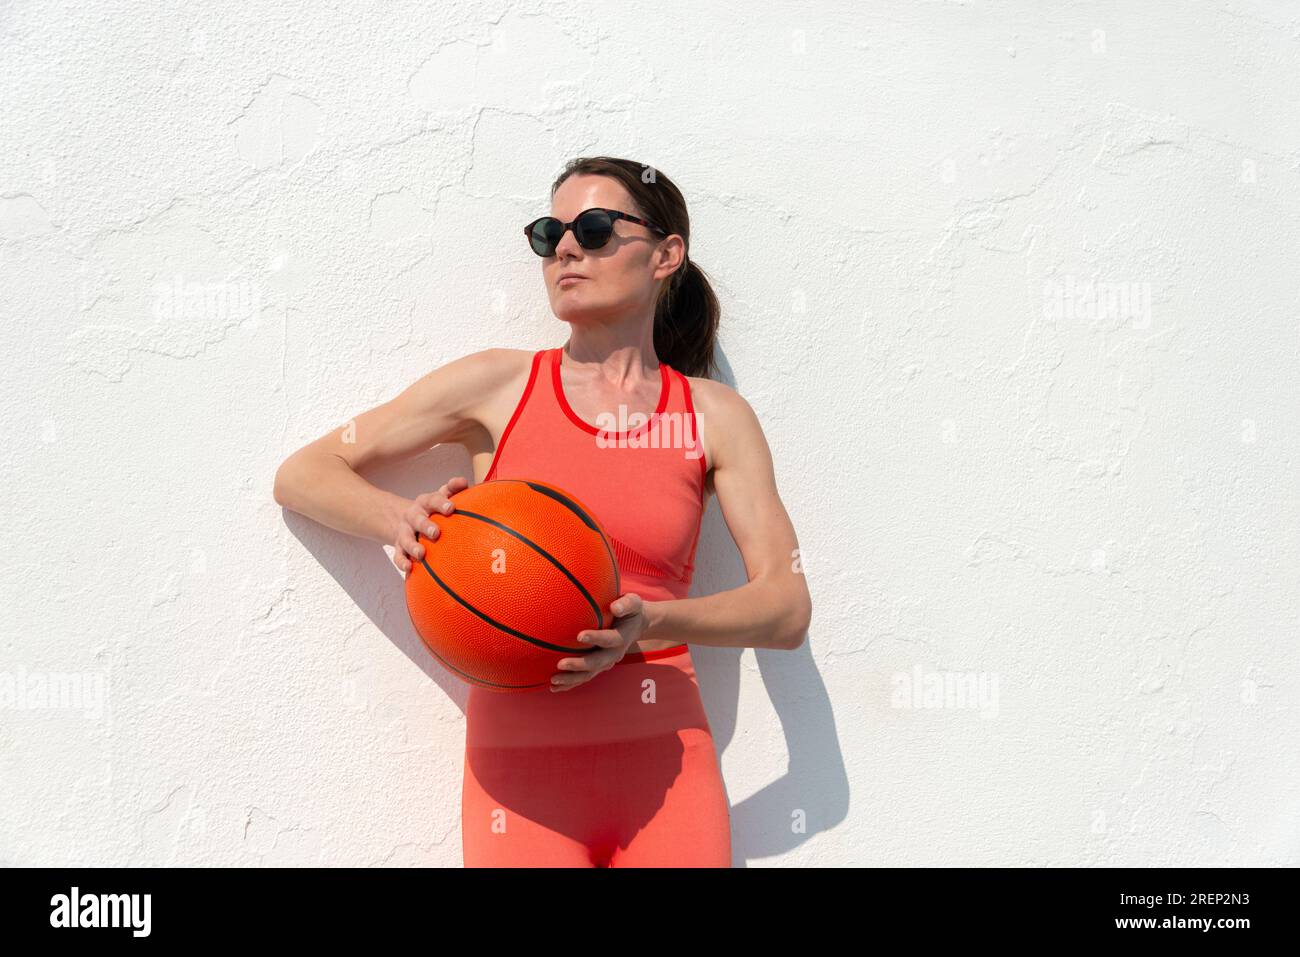 Basketballspielerin, hält einen Basketball, draußen in der Sonne. Stockfoto